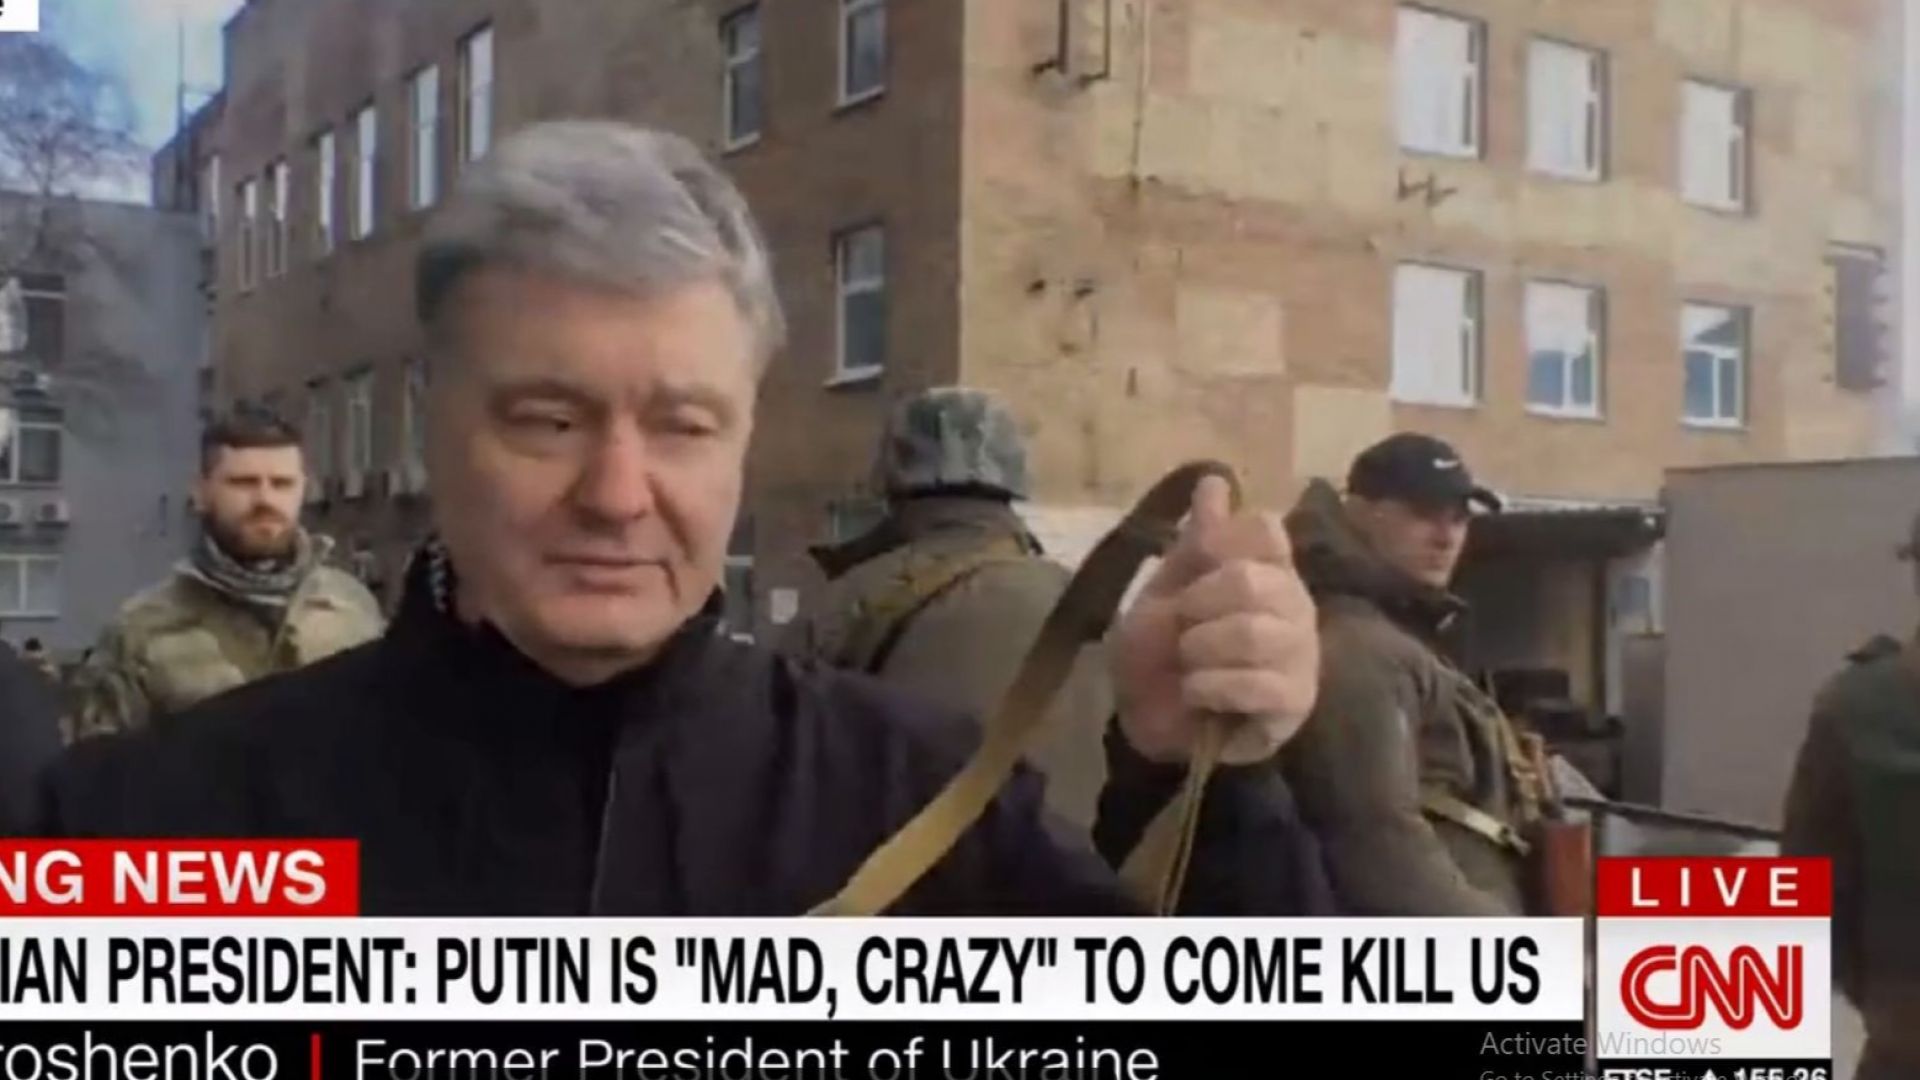 Раздават оръжие на улицата в Киев, CNN засне Порошенко с калашник (видео)